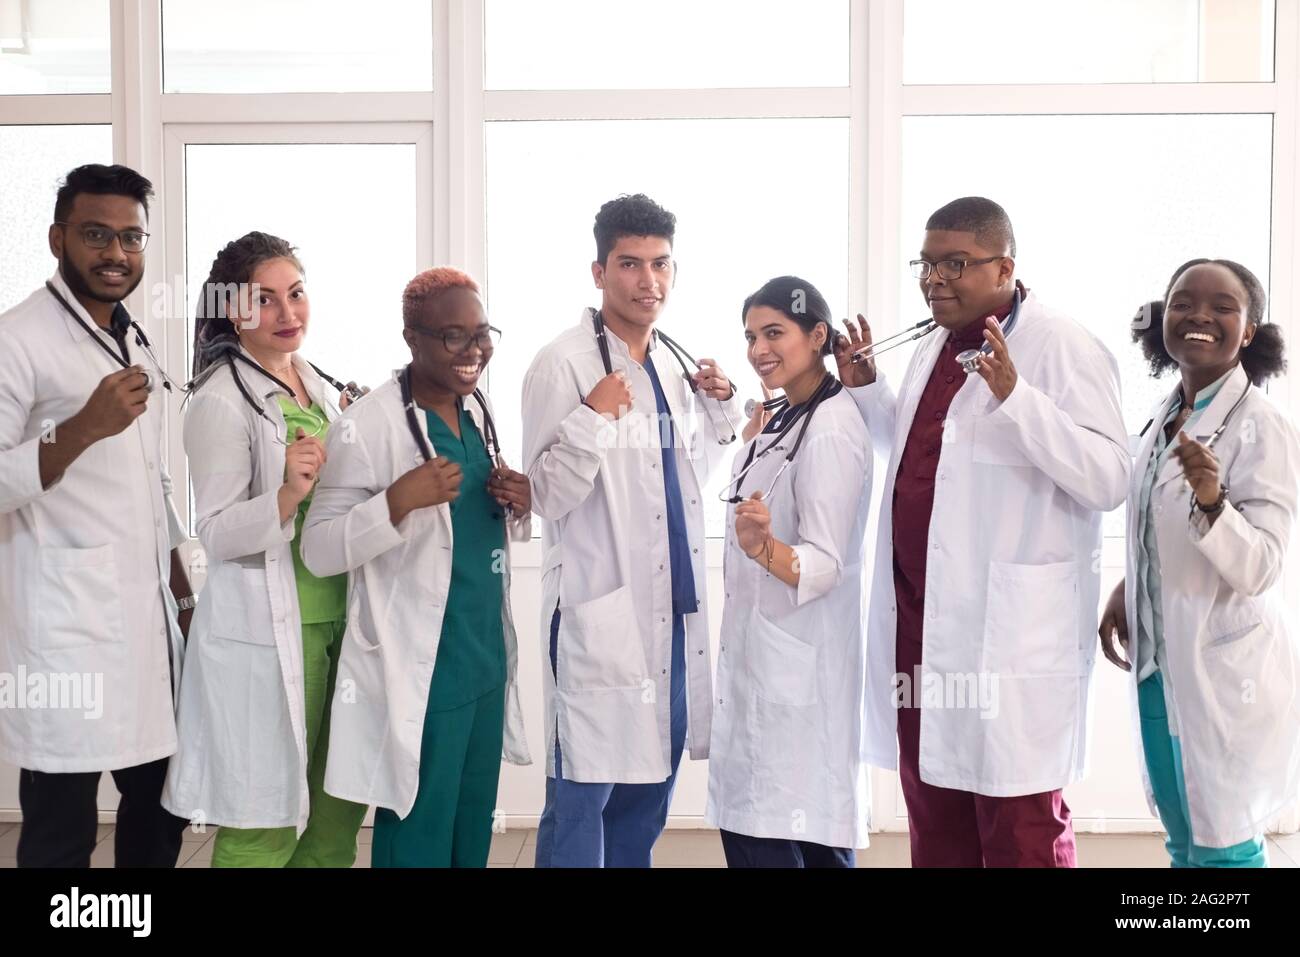 Les étudiants en médecine, médecins, race mixte. Une équipe de jeunes gens en blouse blanche posant dans le couloir de l'hôpital Banque D'Images